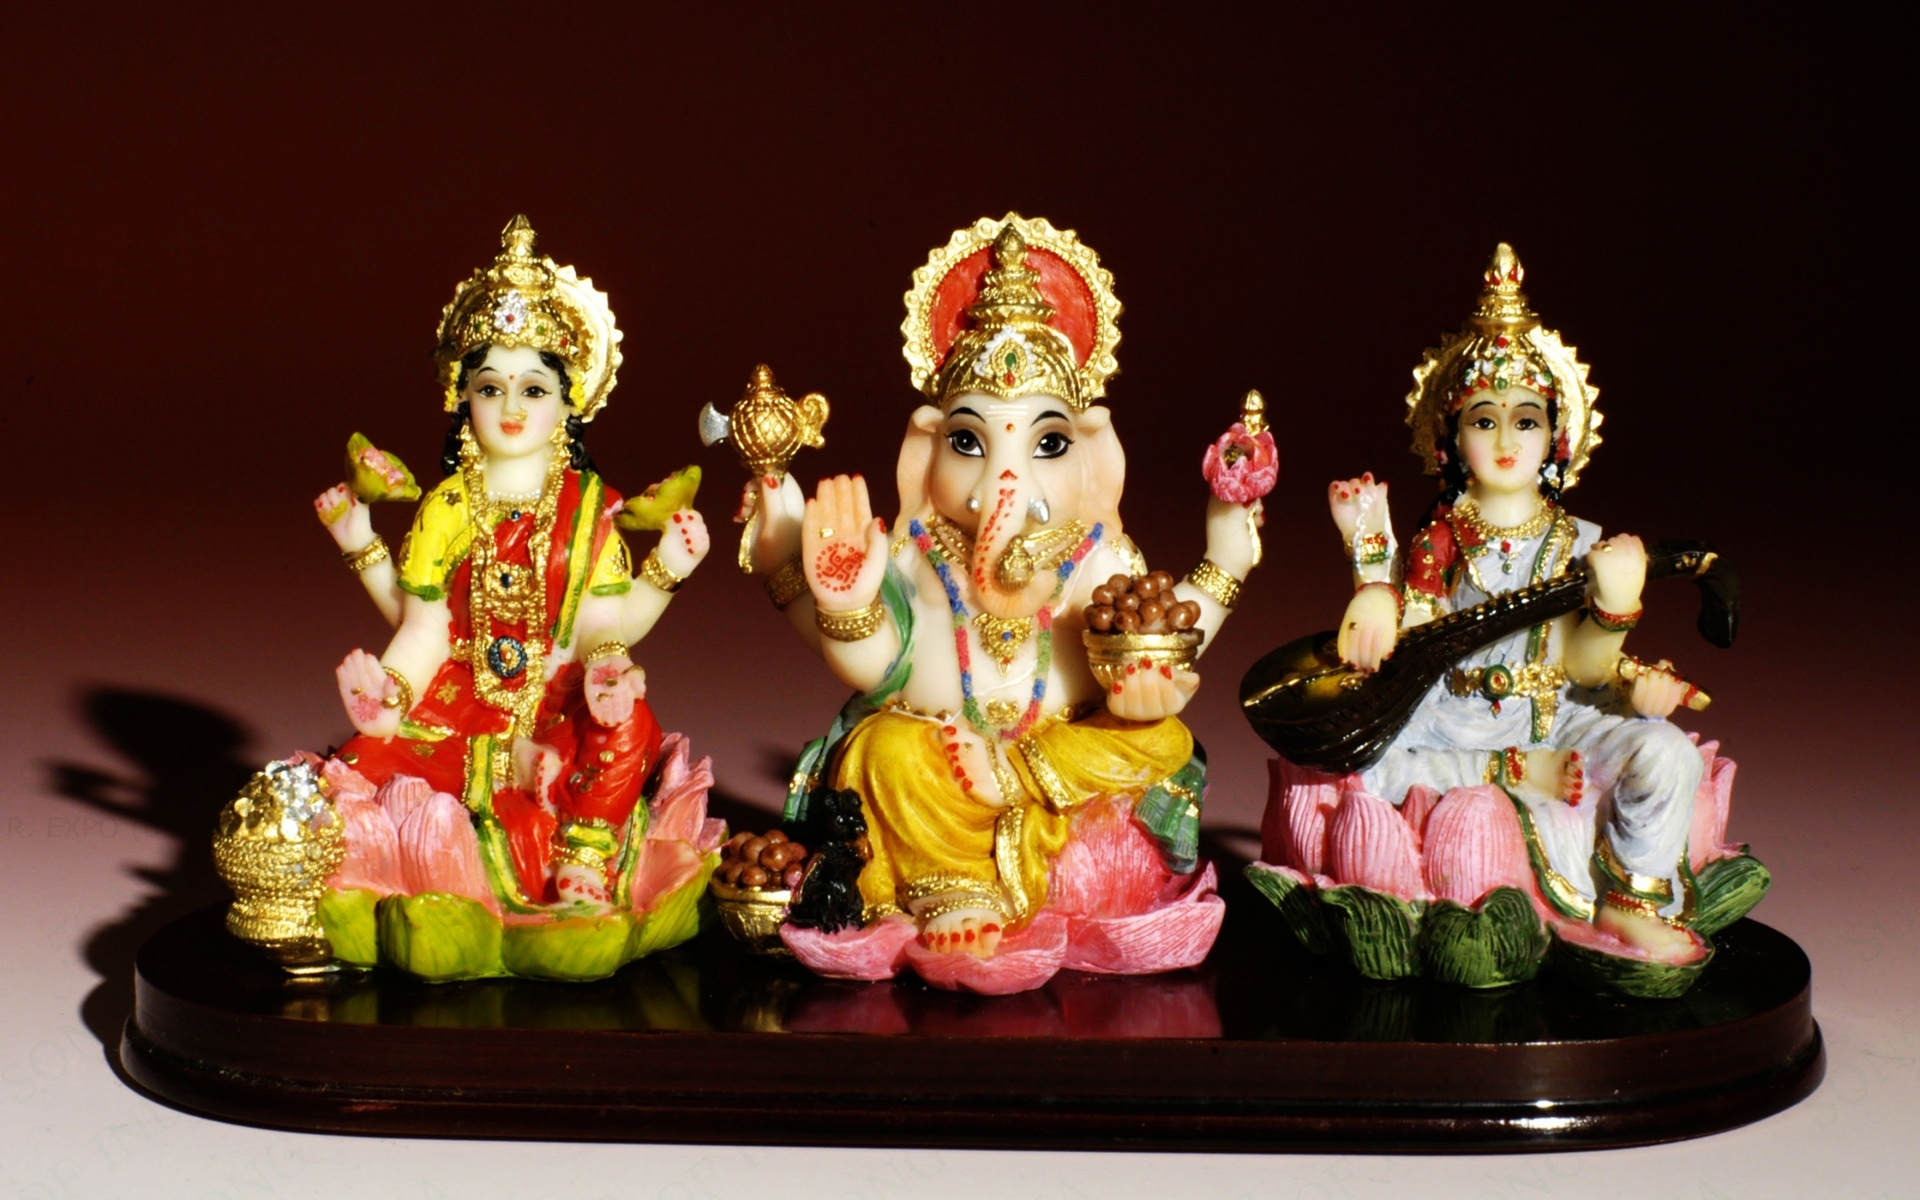 Saraswati Lord Ganesh and Laxmi Full HD Wallpaper and ...